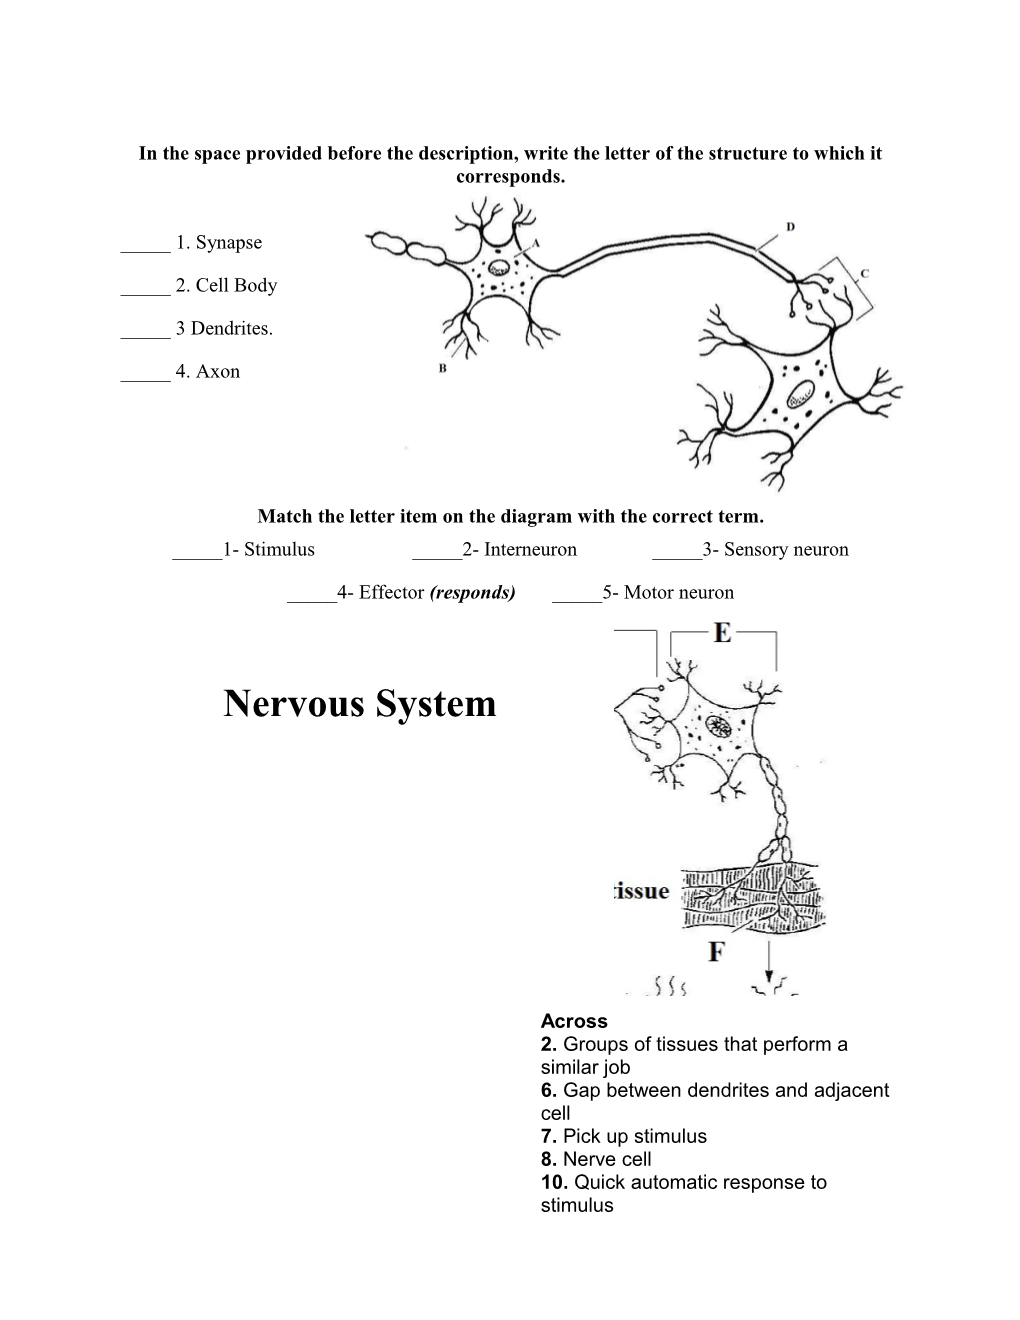 Nervous Structure Worksheet # 1 Mr. Vorstadt